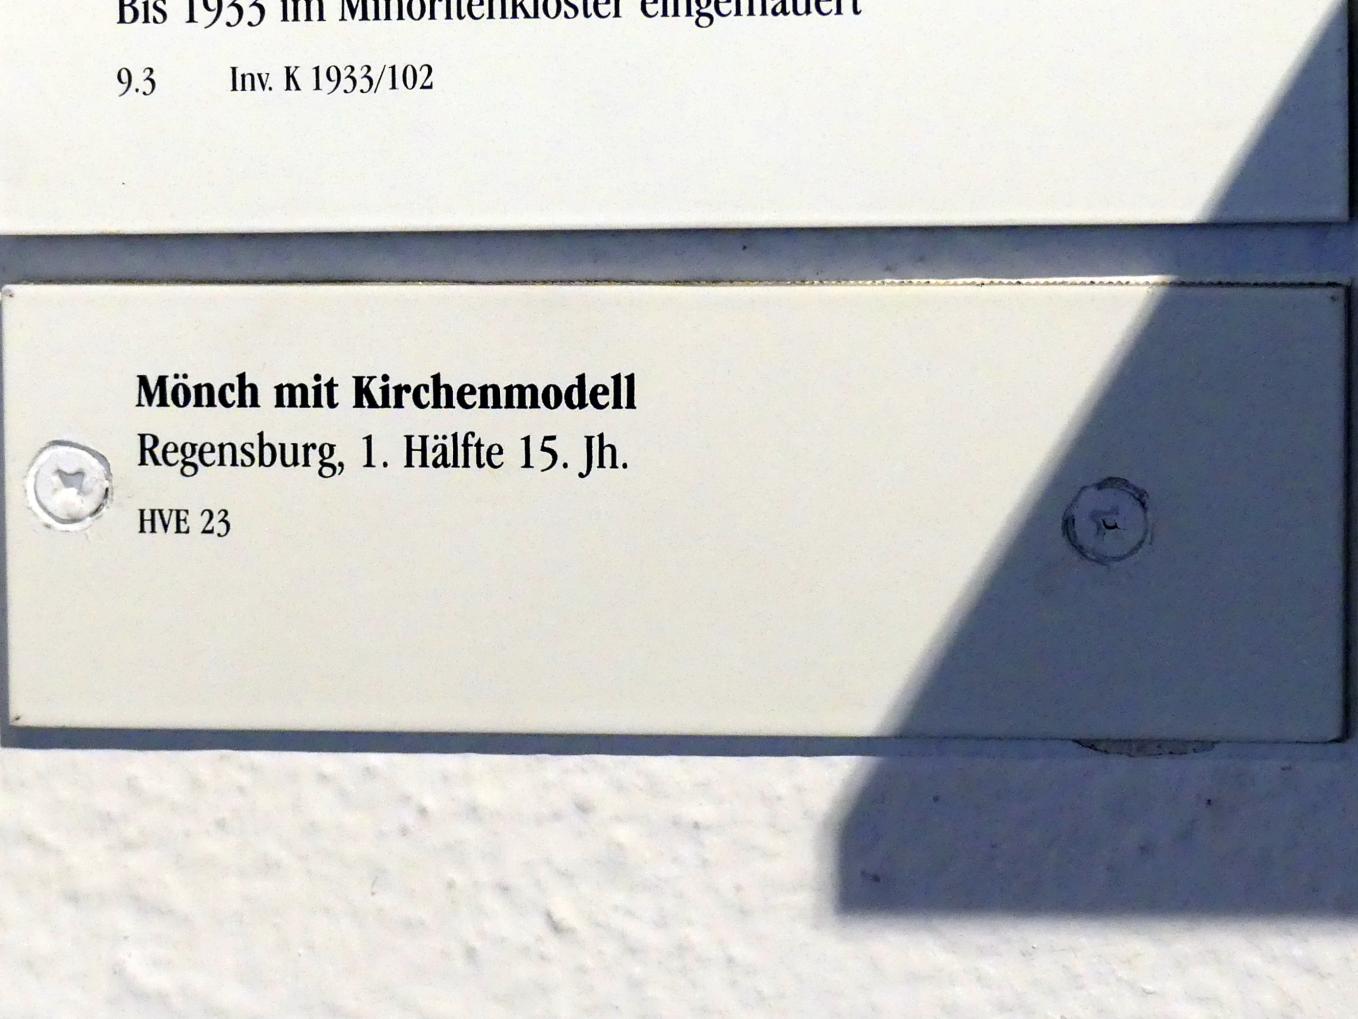 Mönch mit Kirchenmodell, Regensburg, Historisches Museum, 1. Hälfte 15. Jhd., Bild 3/3